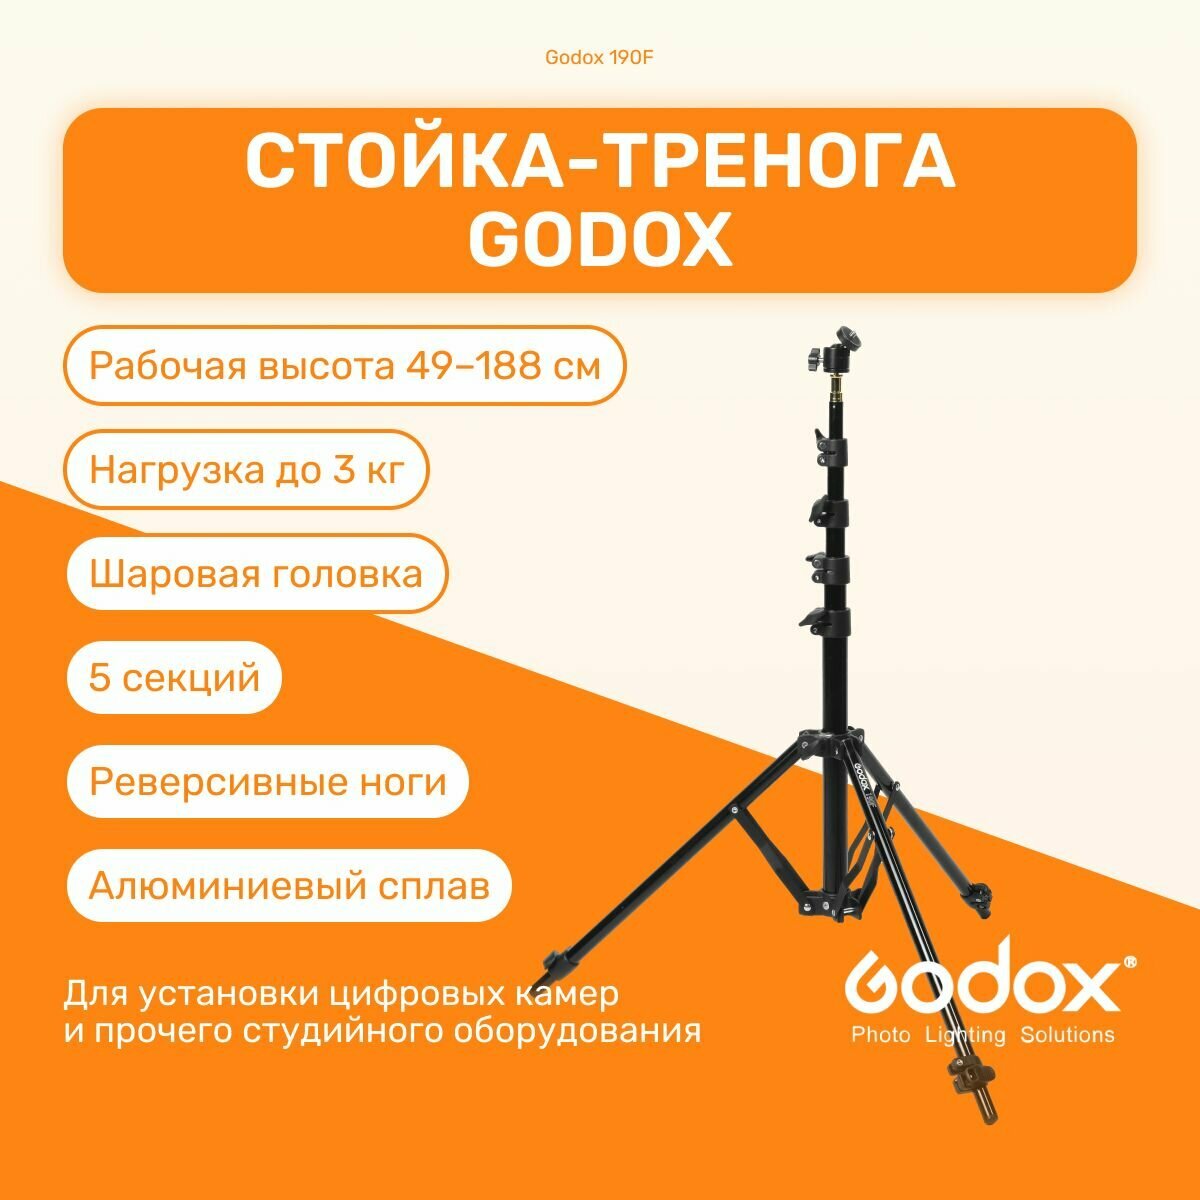 Стойка-тренога Godox 190F 188 см для фото/видеостудии, универсвльная, для светового оборудования, фотозоны, штатив